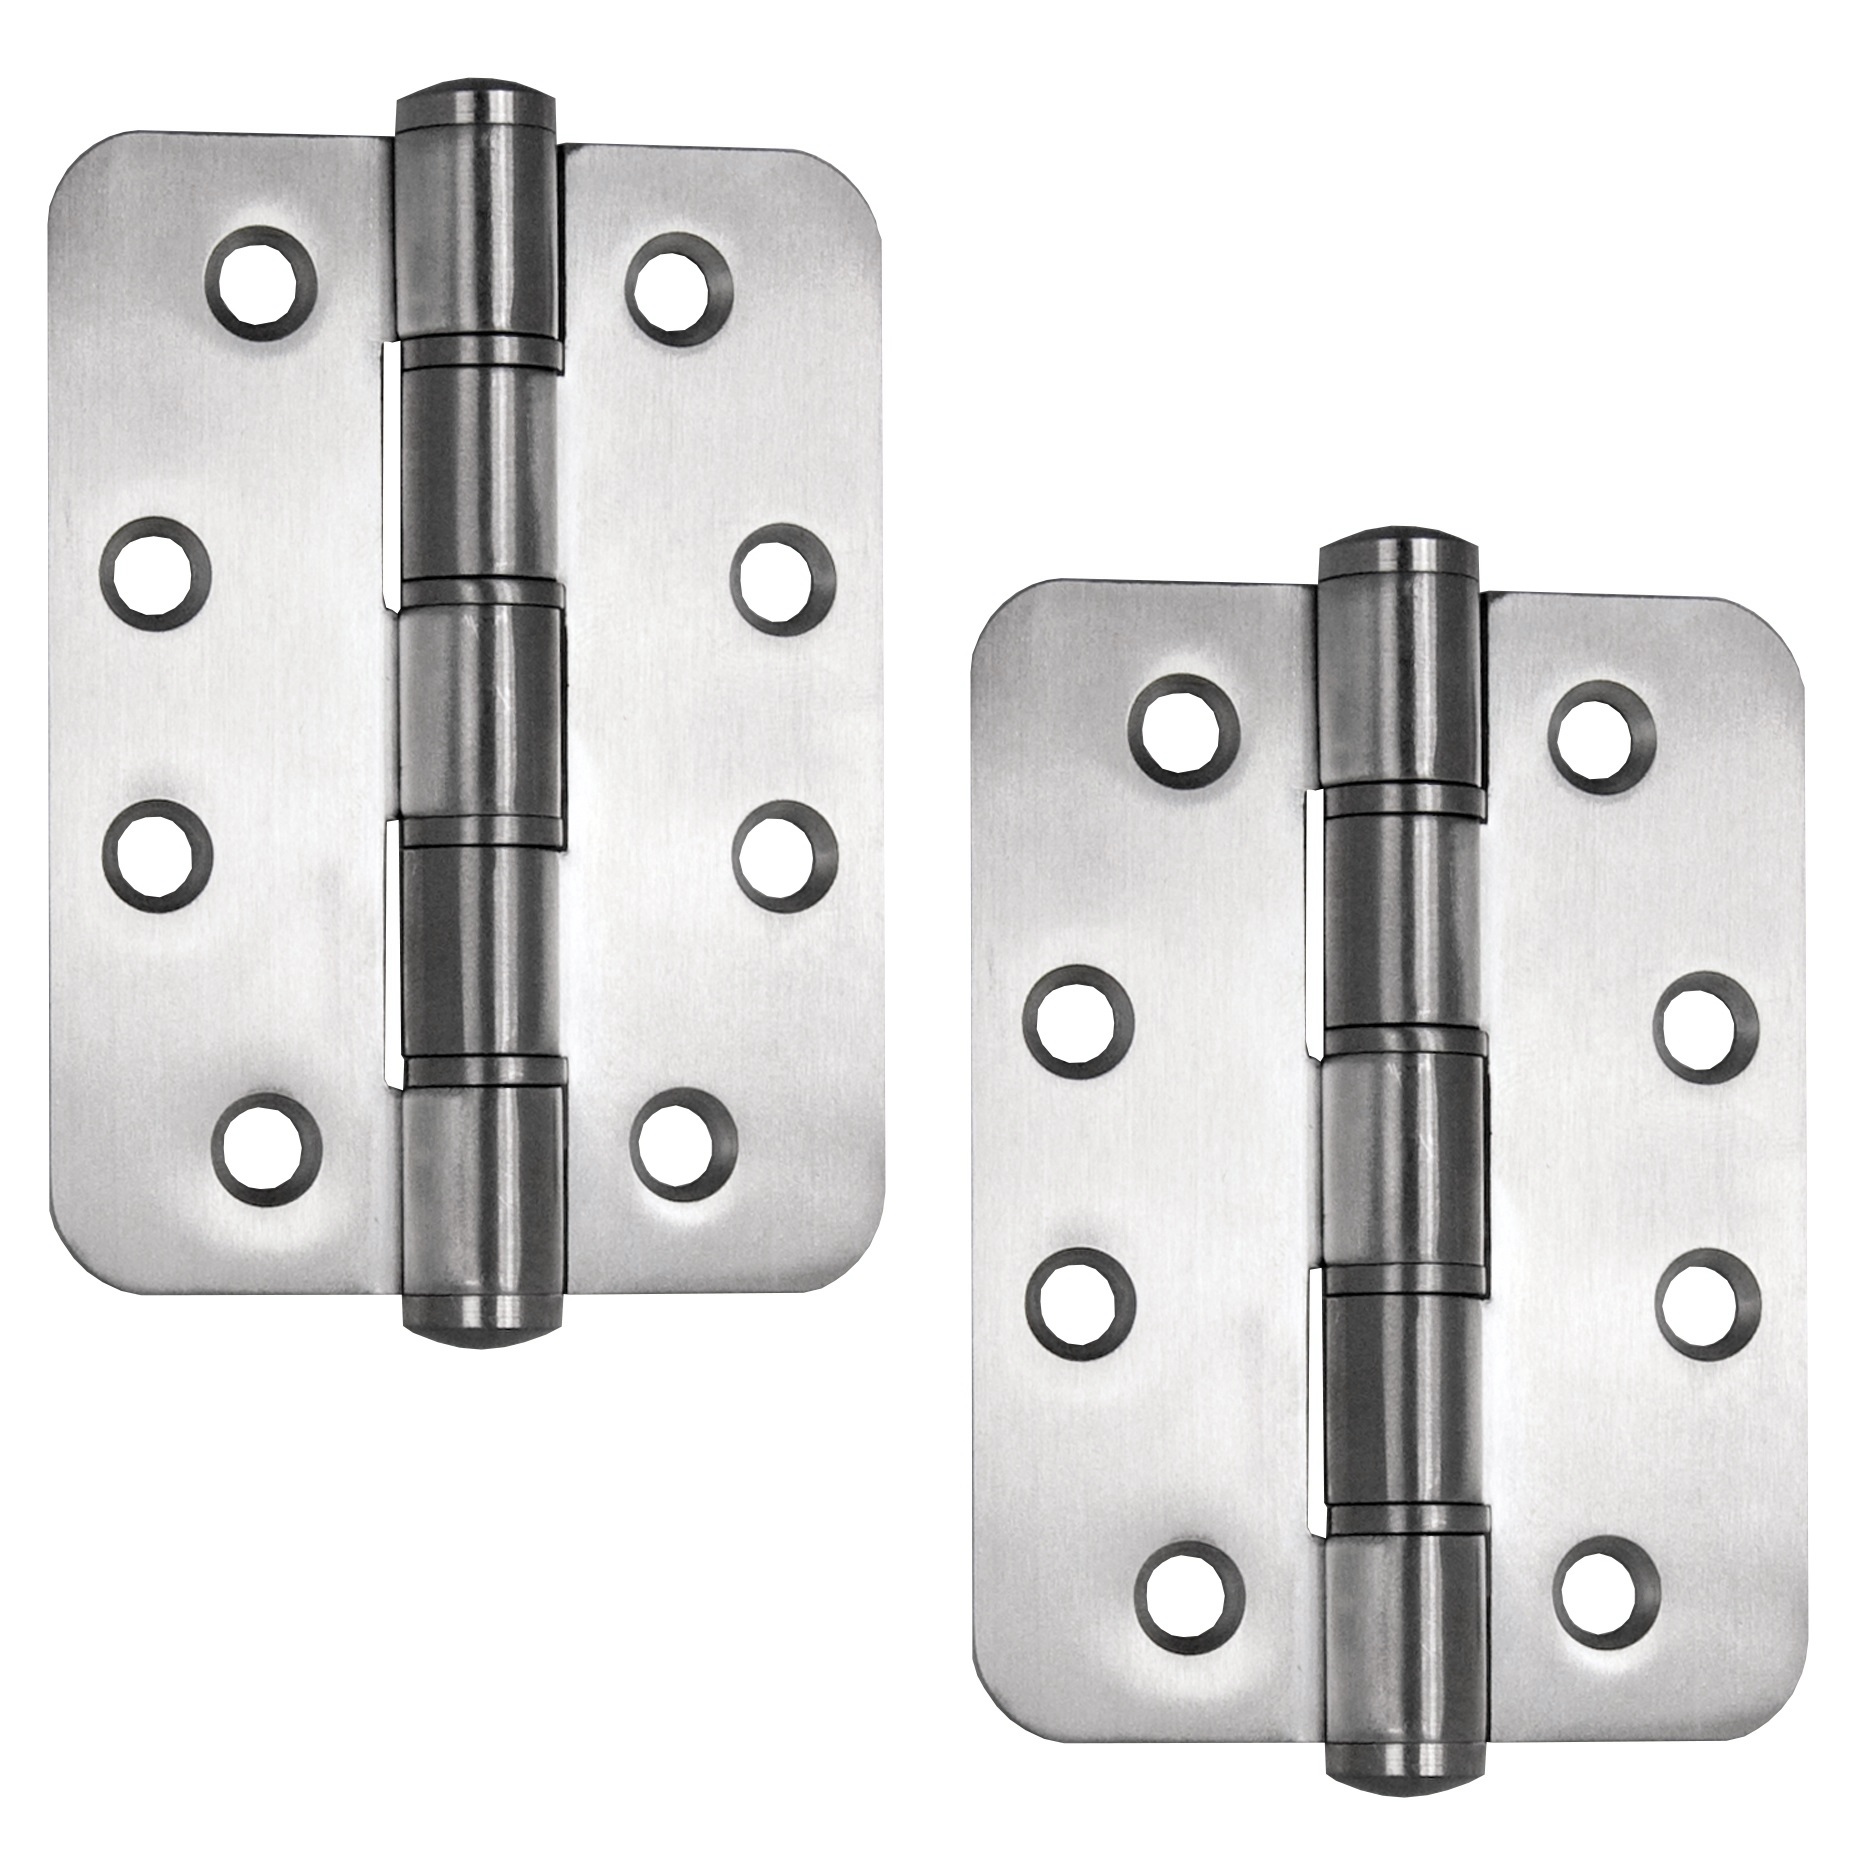 2 piezas de bisagras para puertas SISO / UMAXO® de alta calidad de